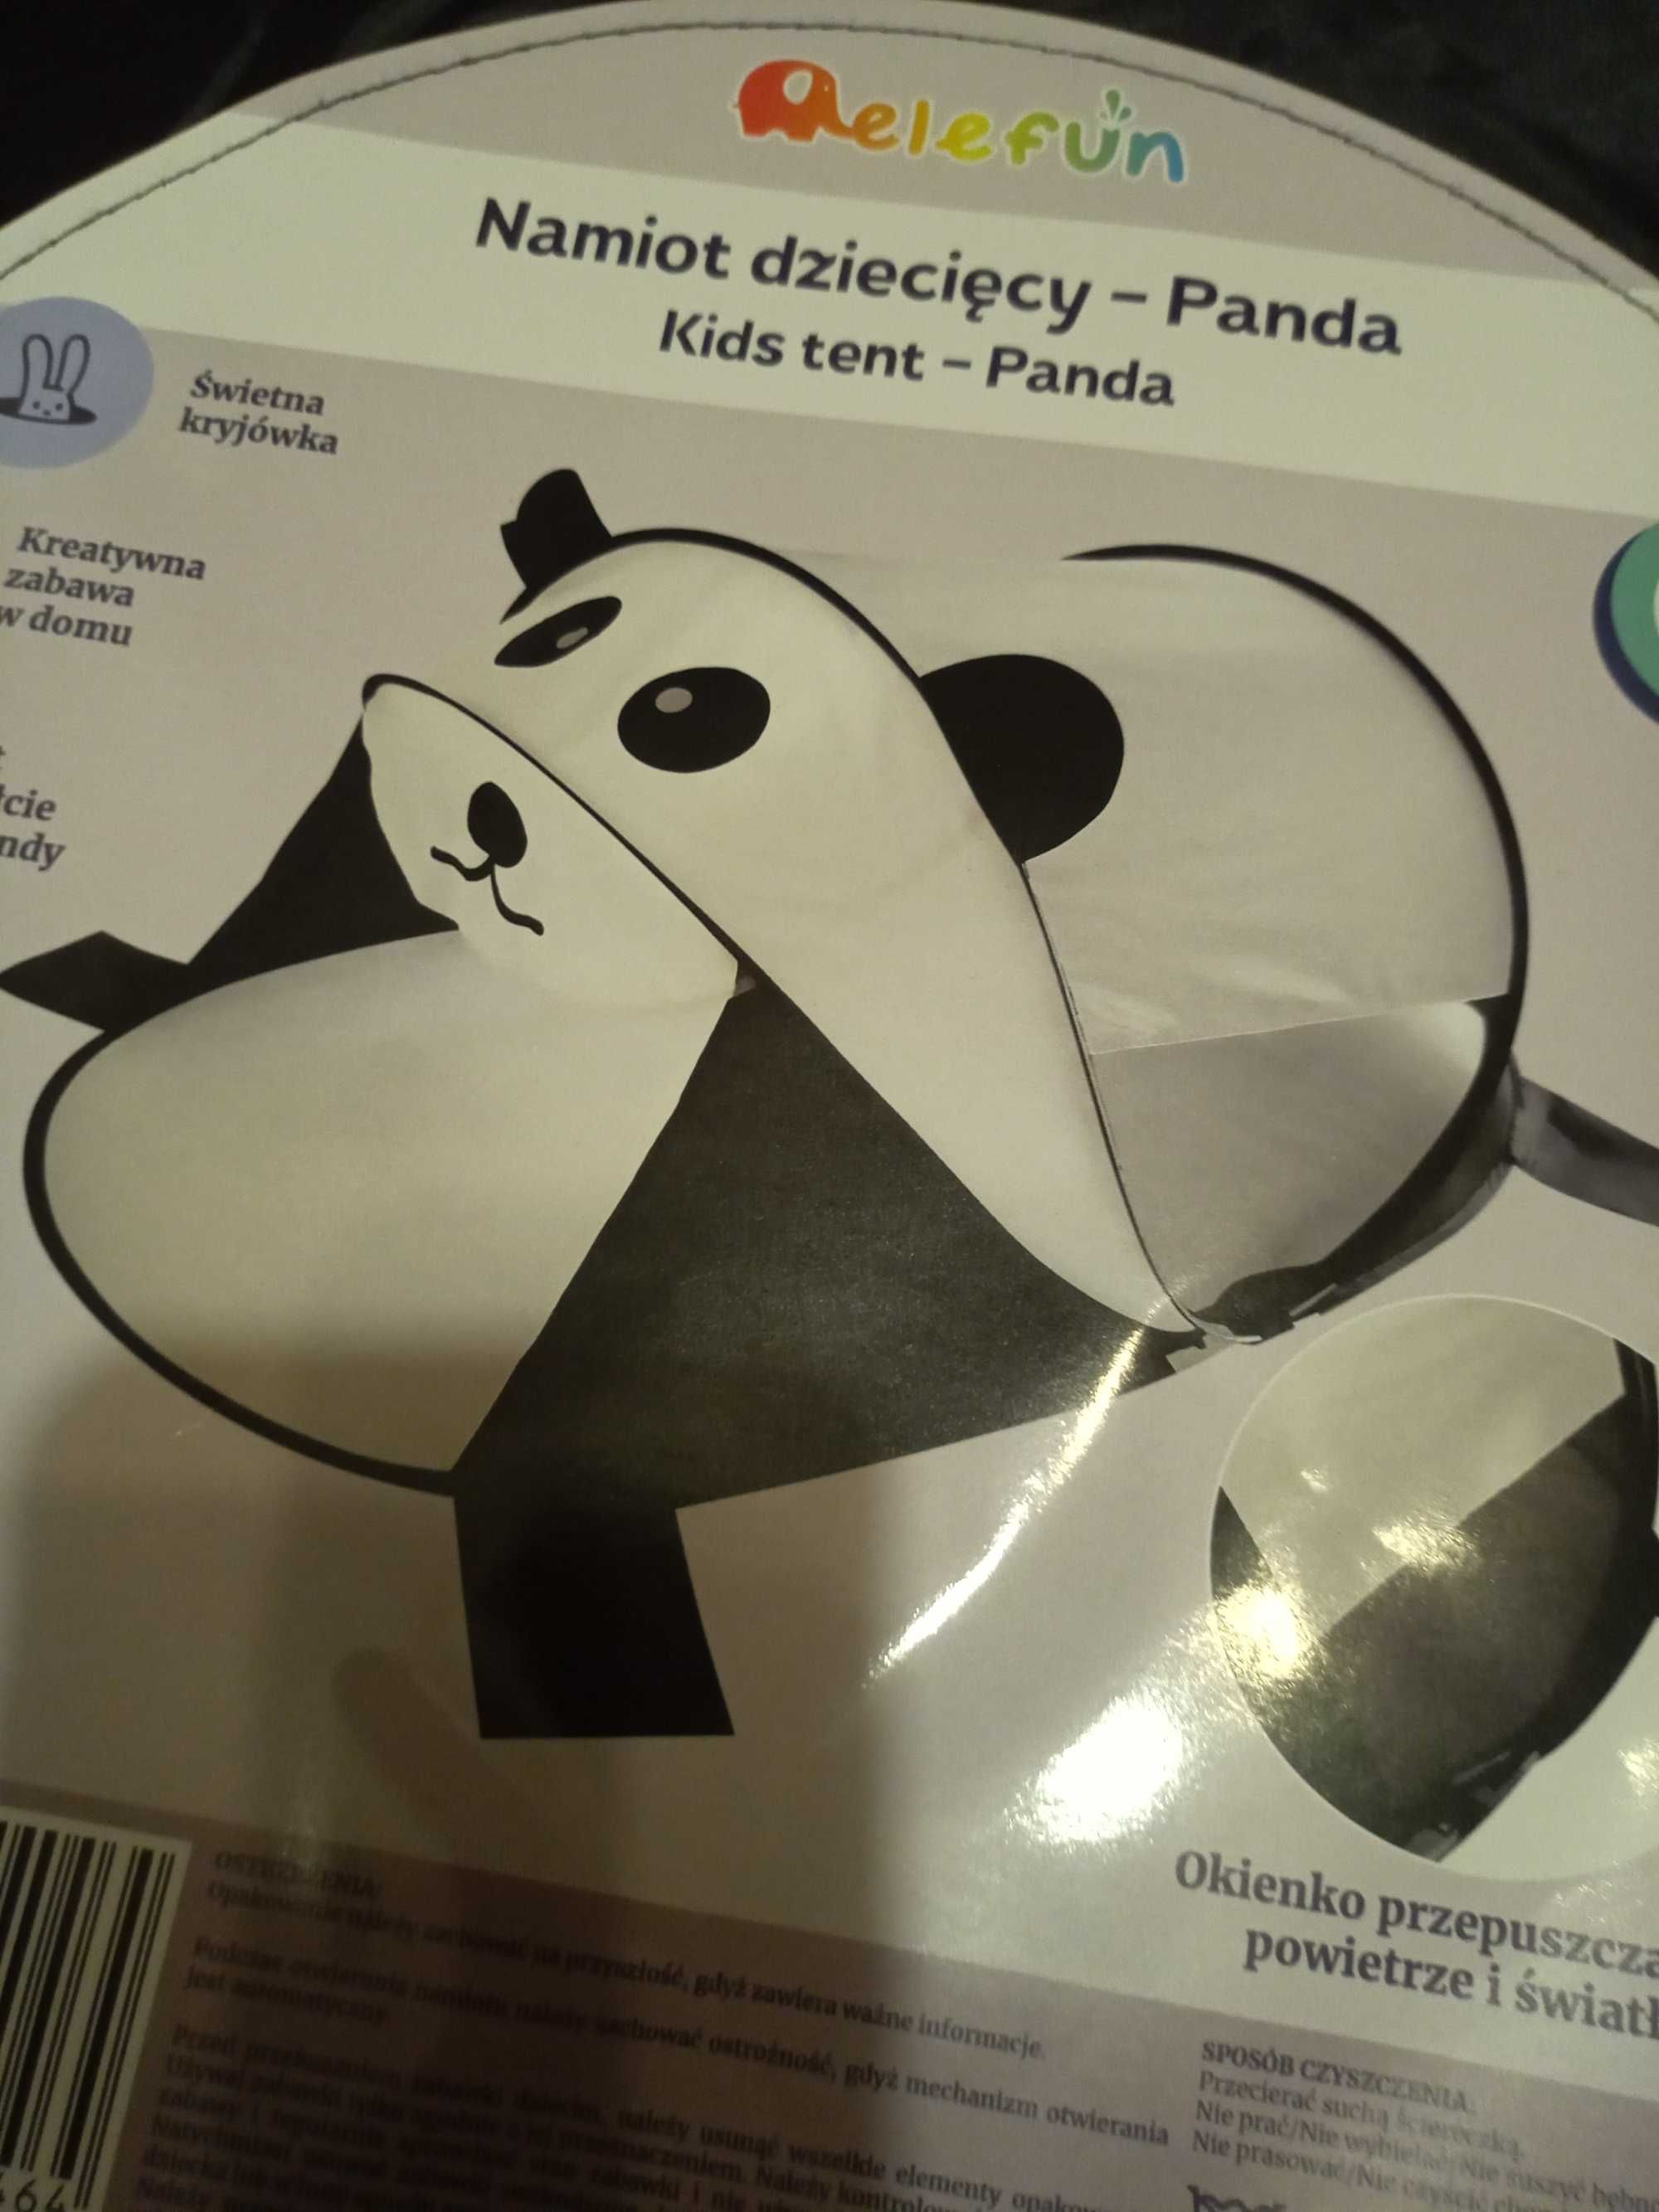 nowy namiot samorozkladajacy sie  dla dzieci panda